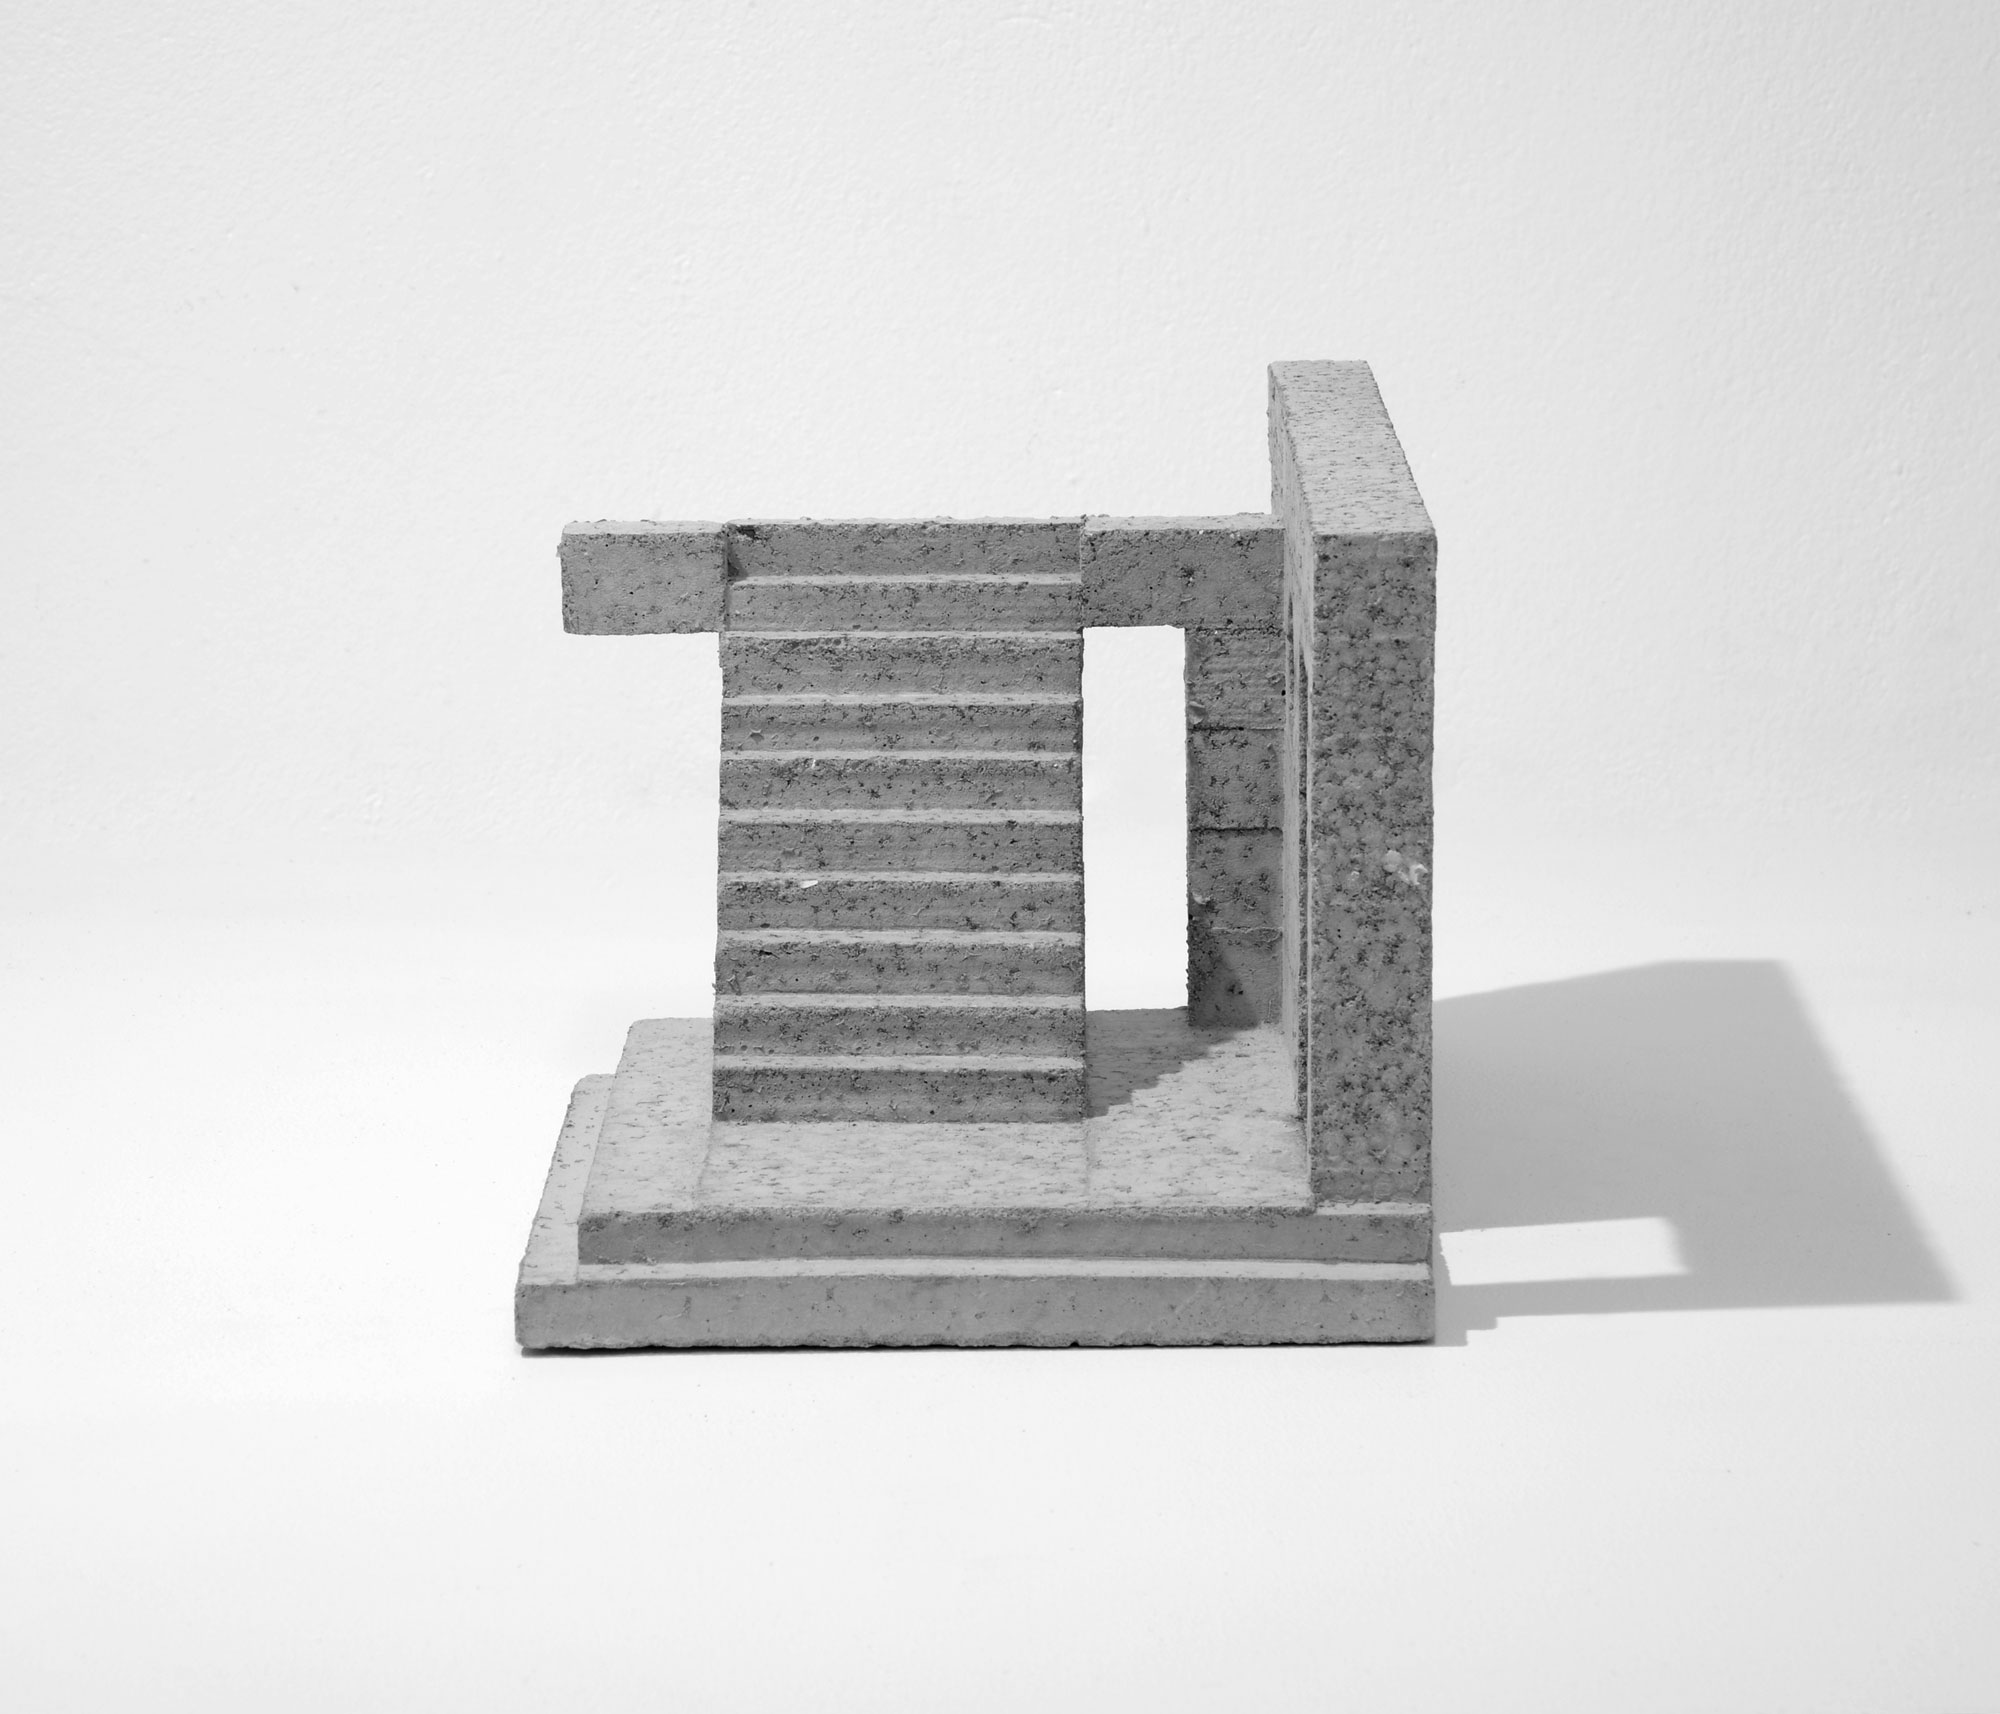 mattia listowski art design objet décoration sculpture béton moulage micro architecture maquette passage 7 édition limitée numérotée signée paris bruxelles 2021